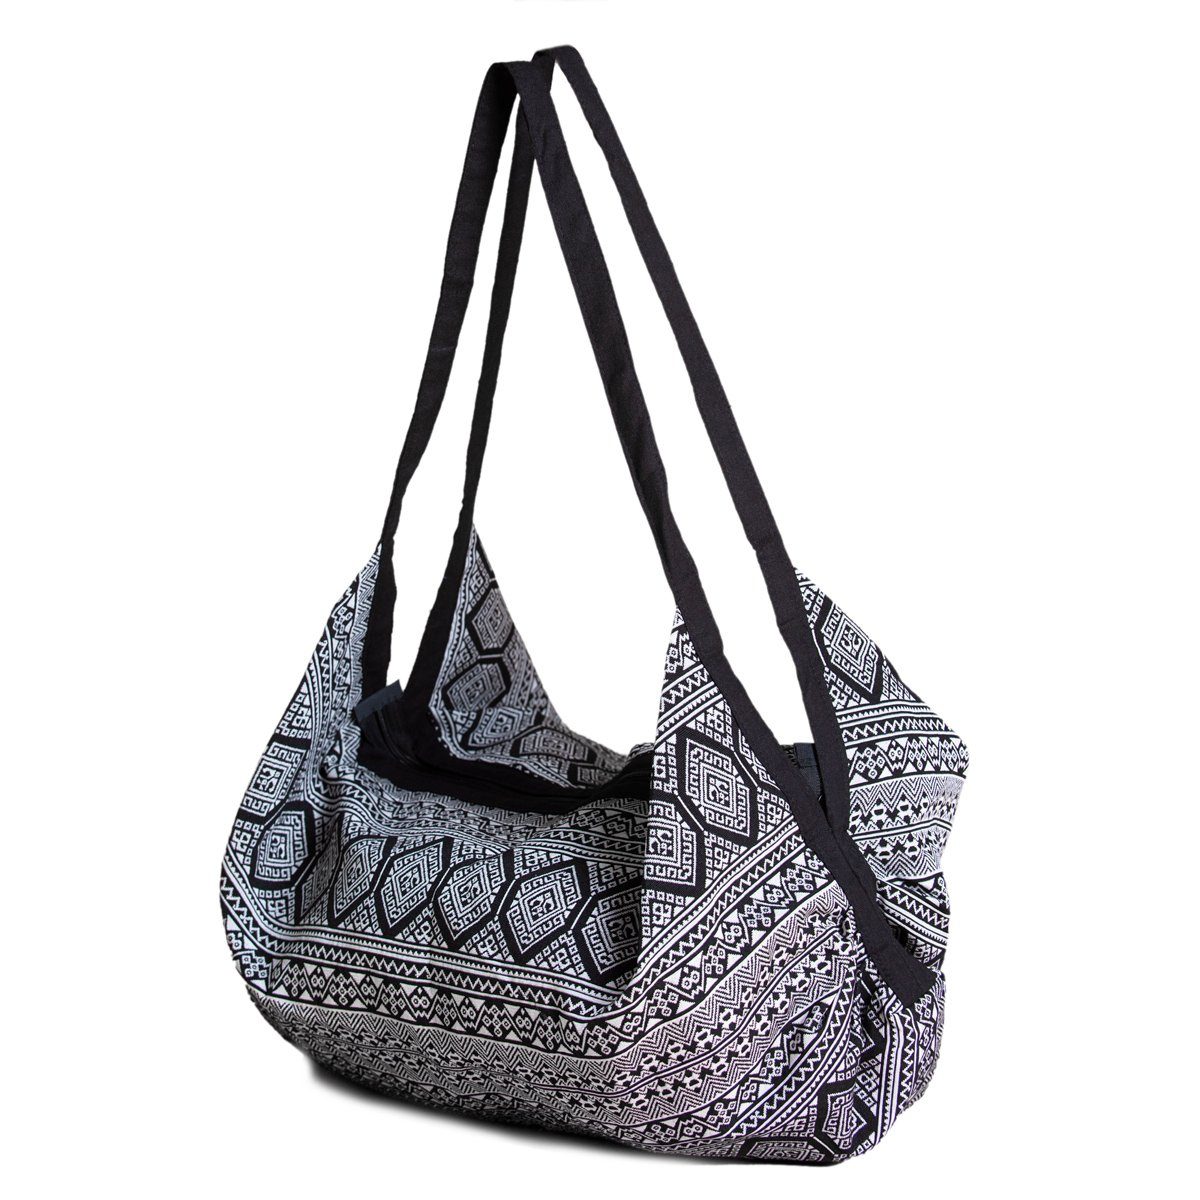 PANASIAM Schultertasche Designs Schwarz in fester aus gewebten Baumwolle Wickeltasche, oder Beuteltasche Yogatasche nutzbar Umhängetasche auch Handtasche Strandtasche als